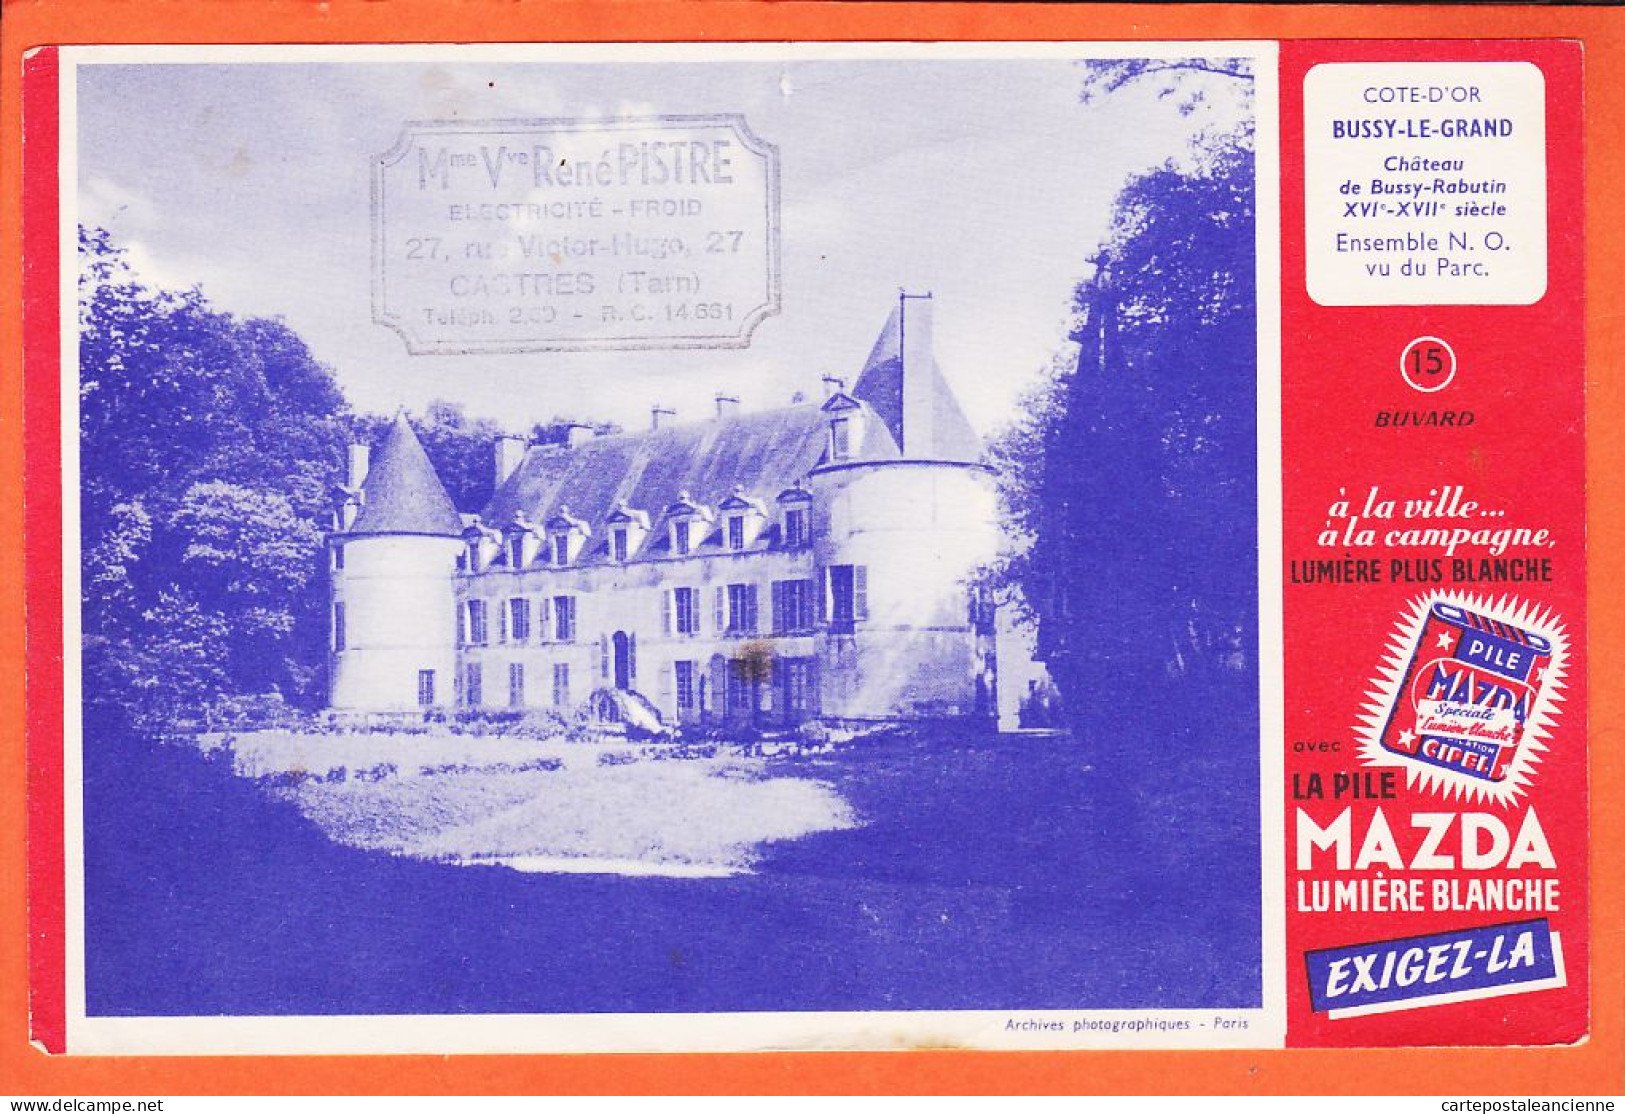 06206 / Buvard N°15 Pile MAZDA Lumière Blanche BUSSY-LE-GRAND 21-Cote D'or Chateau RABUTIN Ensemble N.O Vu Du Parc  - Piles